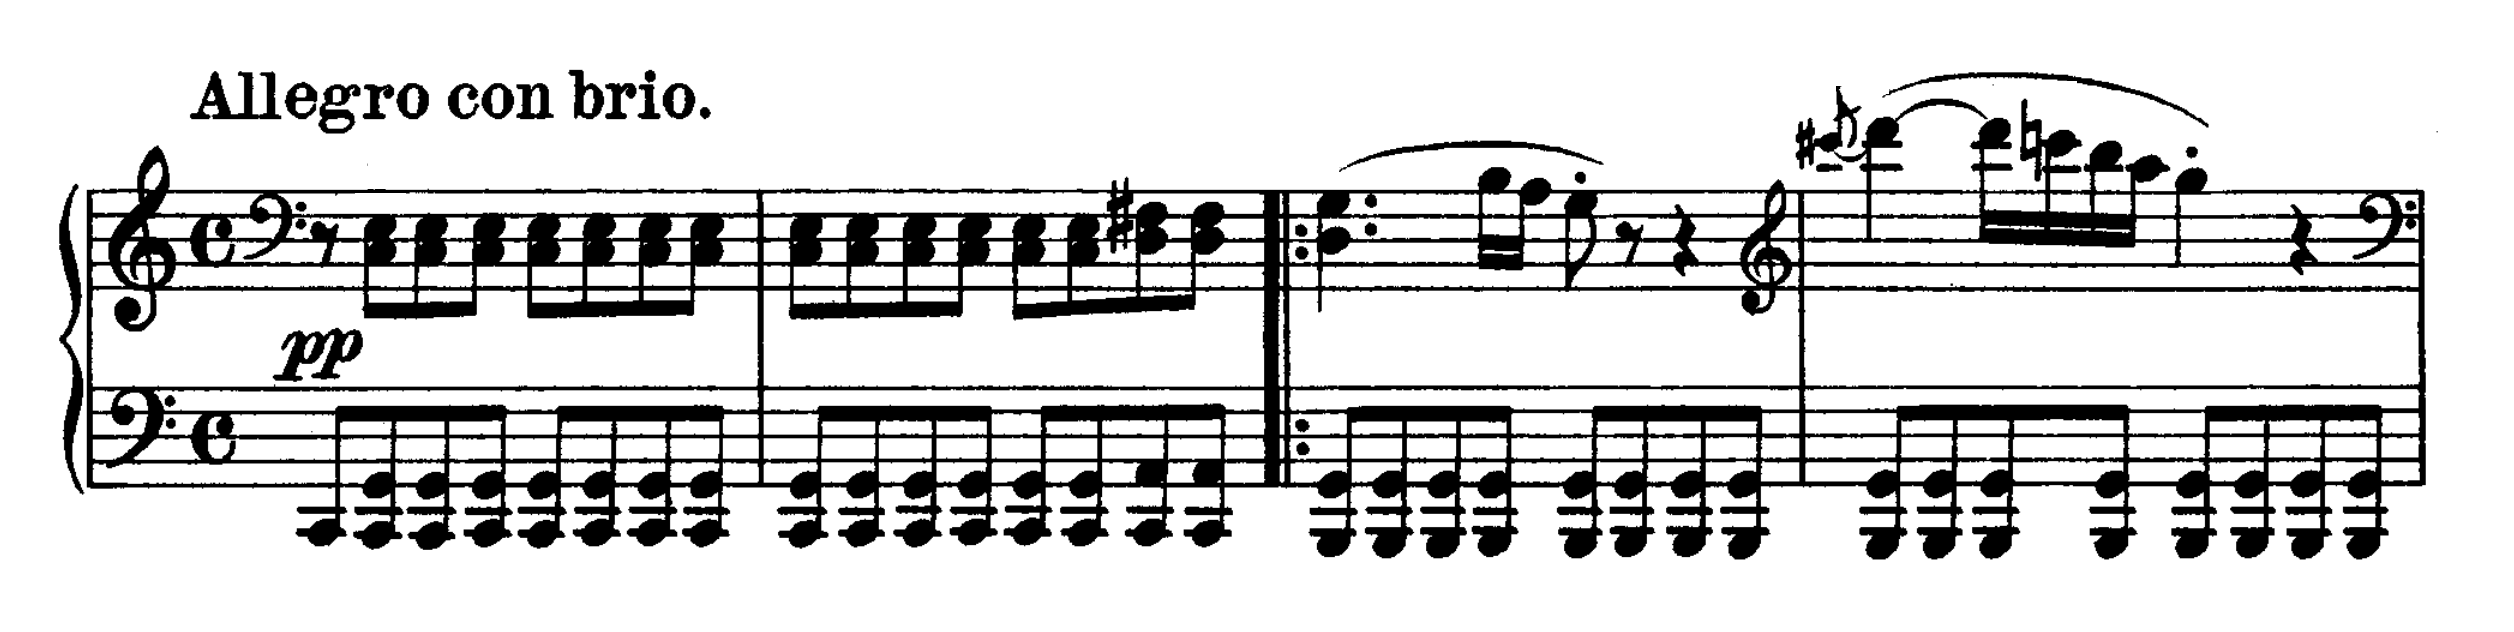 Соната для фортепиано no. 21 (бетховен) - piano sonata no. 21 (beethoven) - wikipedia